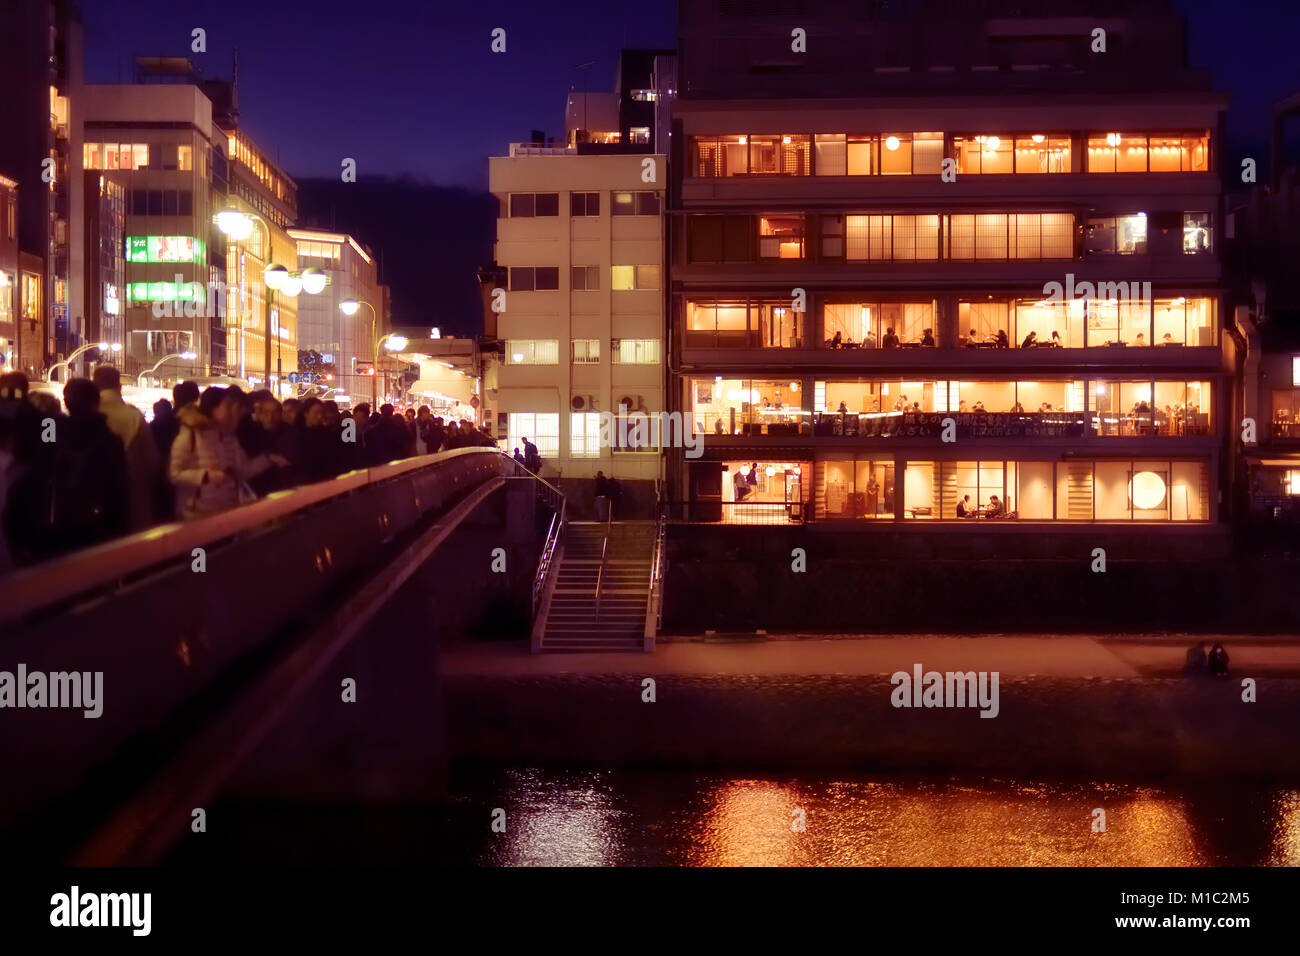 Führerschein verfügbar unter MaximImages.com - Izumoya, japanisches Restaurantgebäude mit nachts beleuchteten Fenstern und Gästen, die drinnen essen. Shijo Brücke rüber Stockfoto